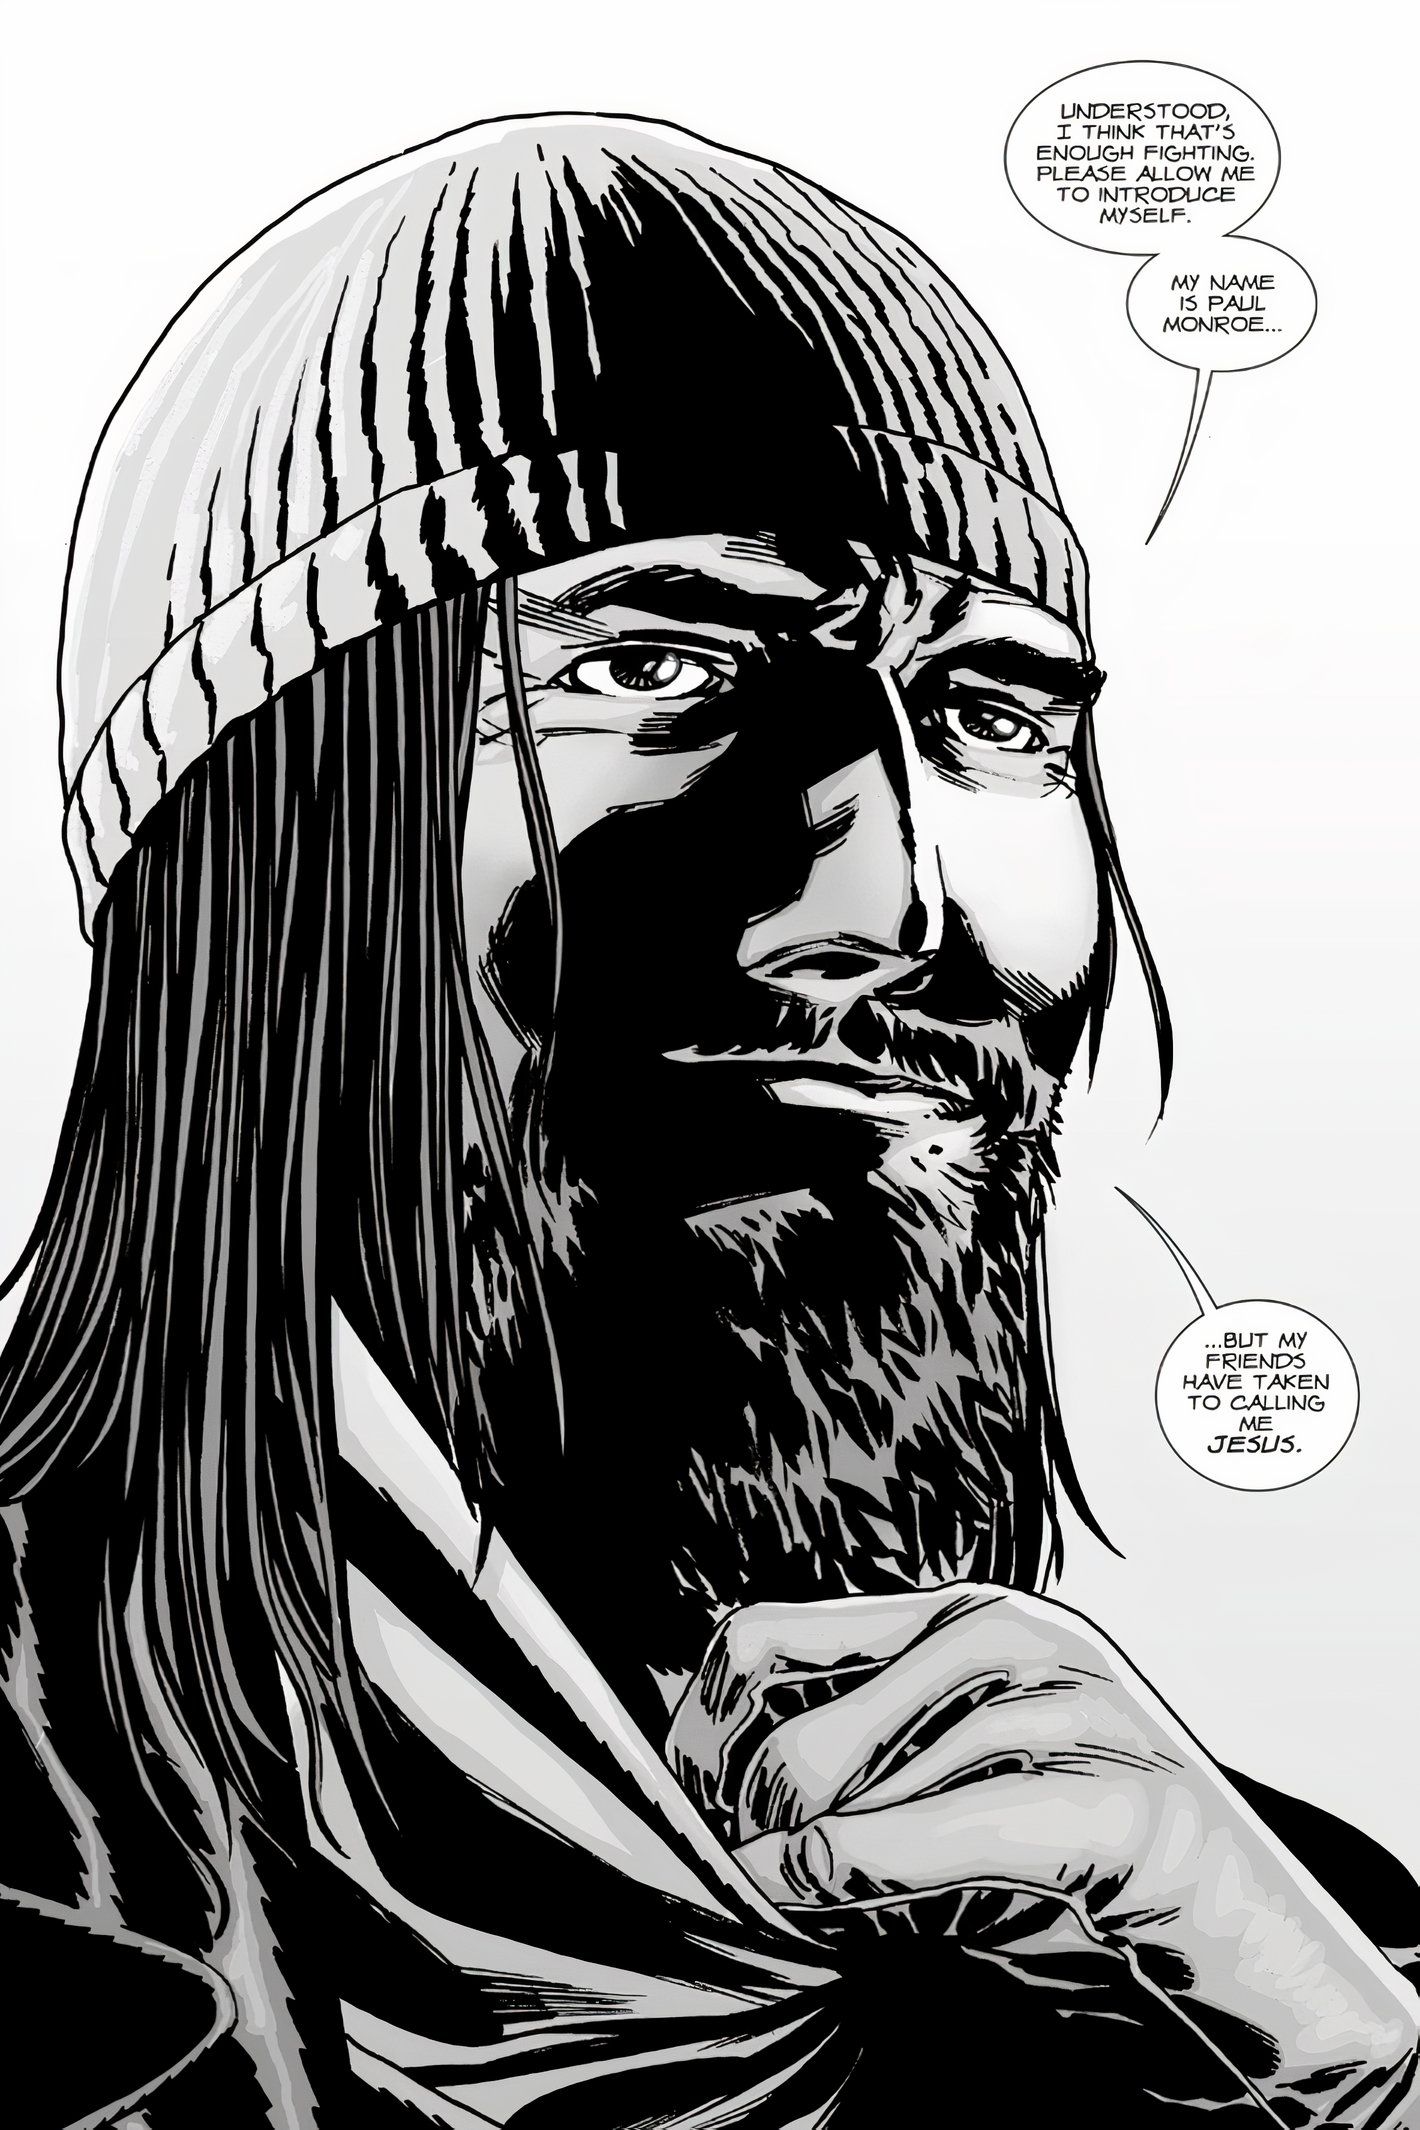 The Walking Dead #92, Jesus Monroe se apresenta a Rick e aos outros sobreviventes